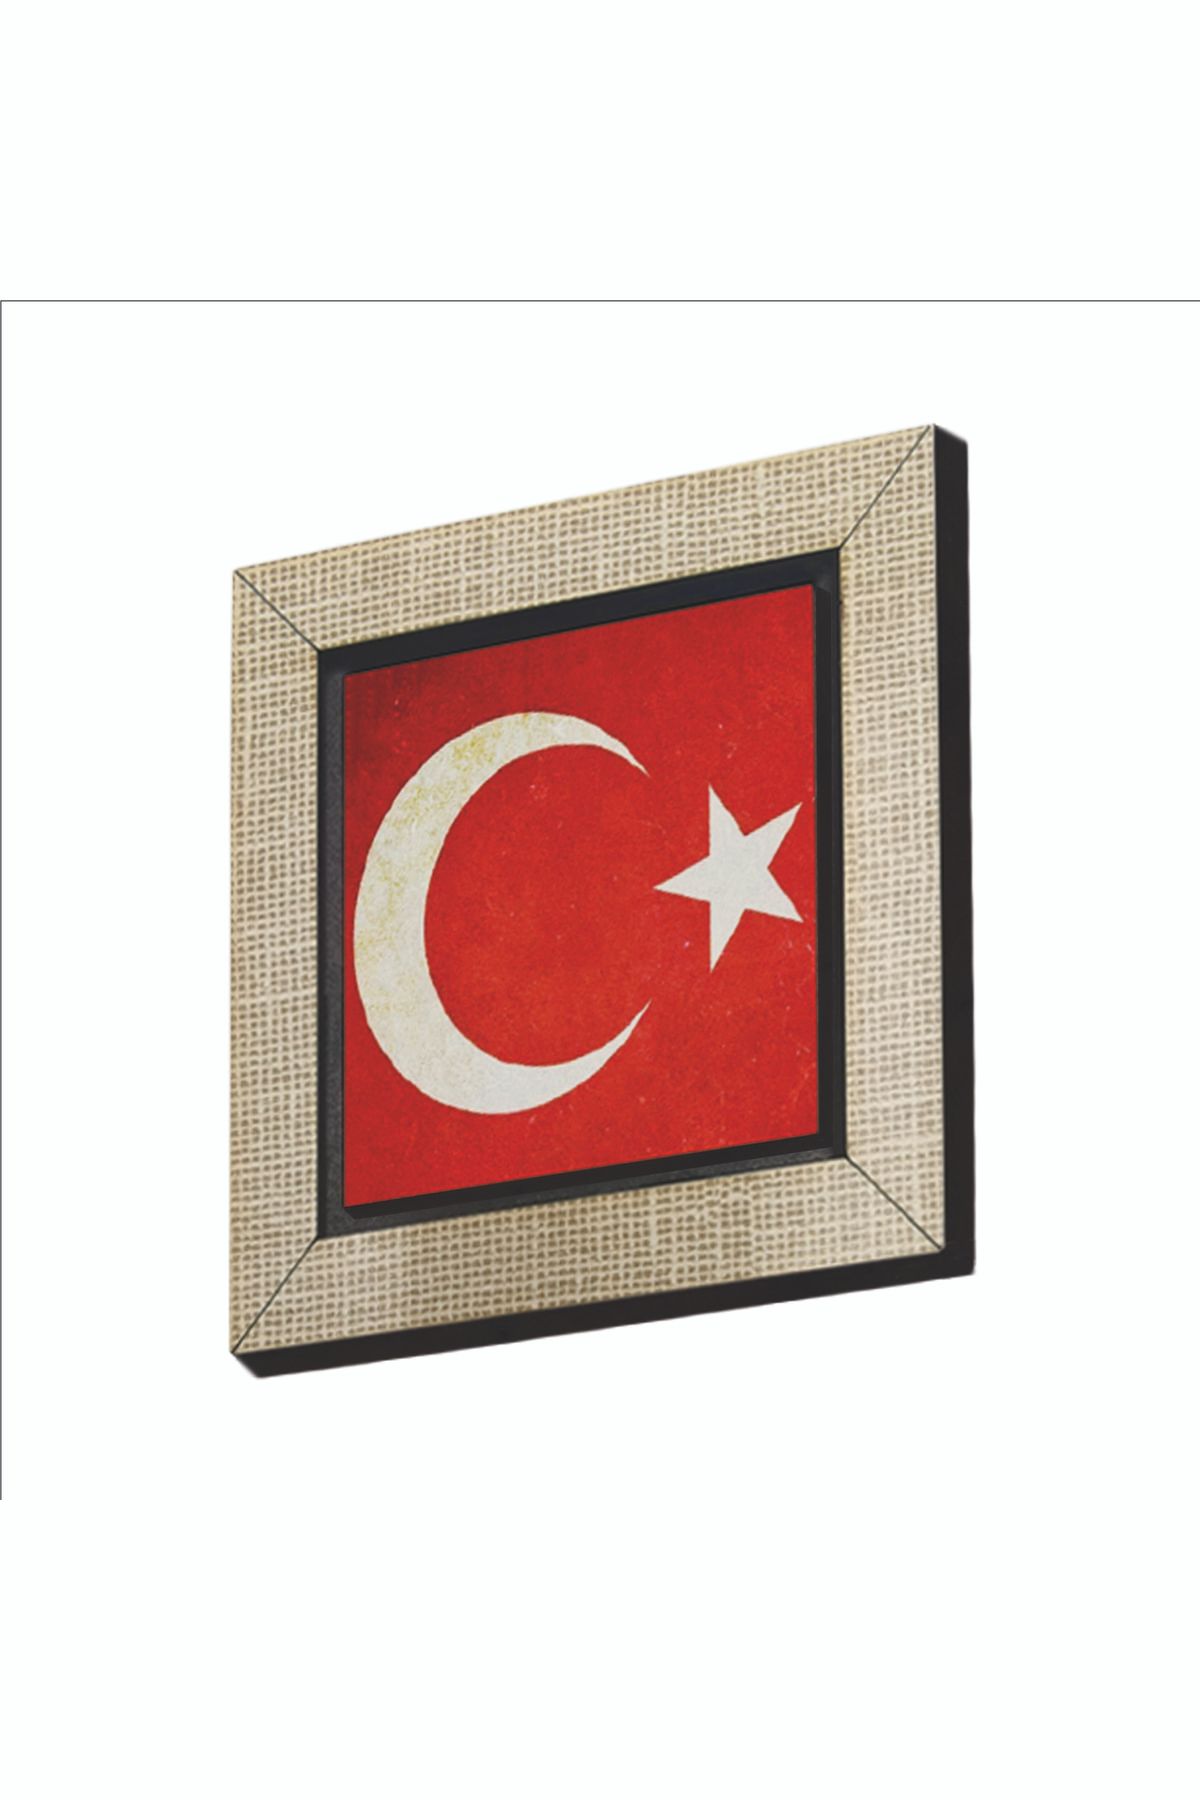 BAKSEPETE Türkiye Bayrağı Baskılı Mdf Magnetkrt-098